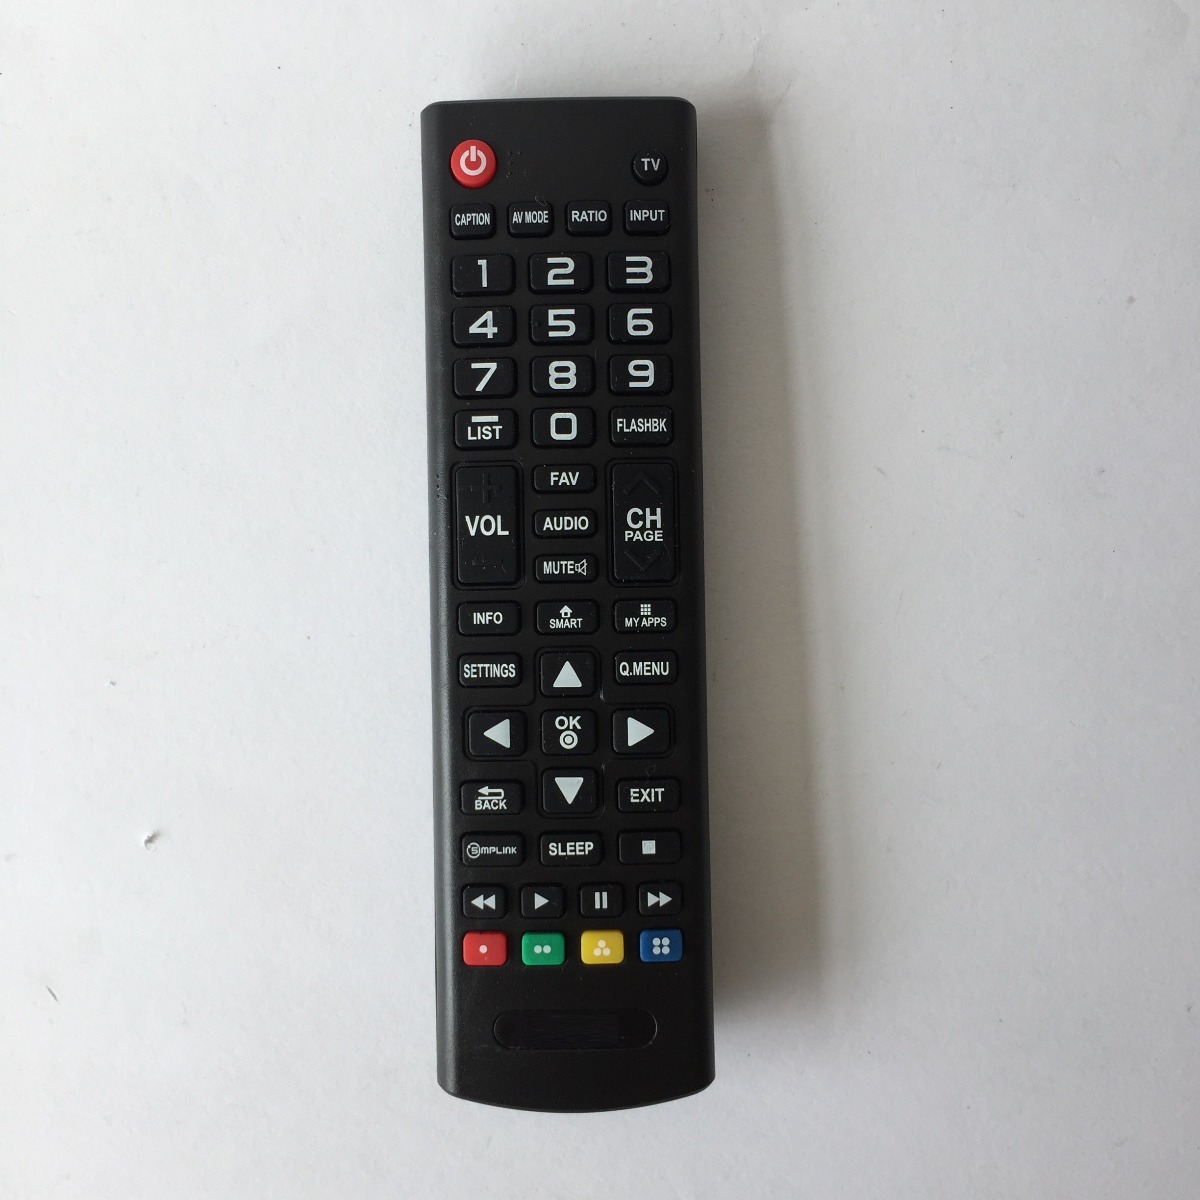 Control Remoto Para Smart Tv LG Lcd Led Pantalla - $ 114.90 en Mercado - Control Lg Smart Tv No Funciona